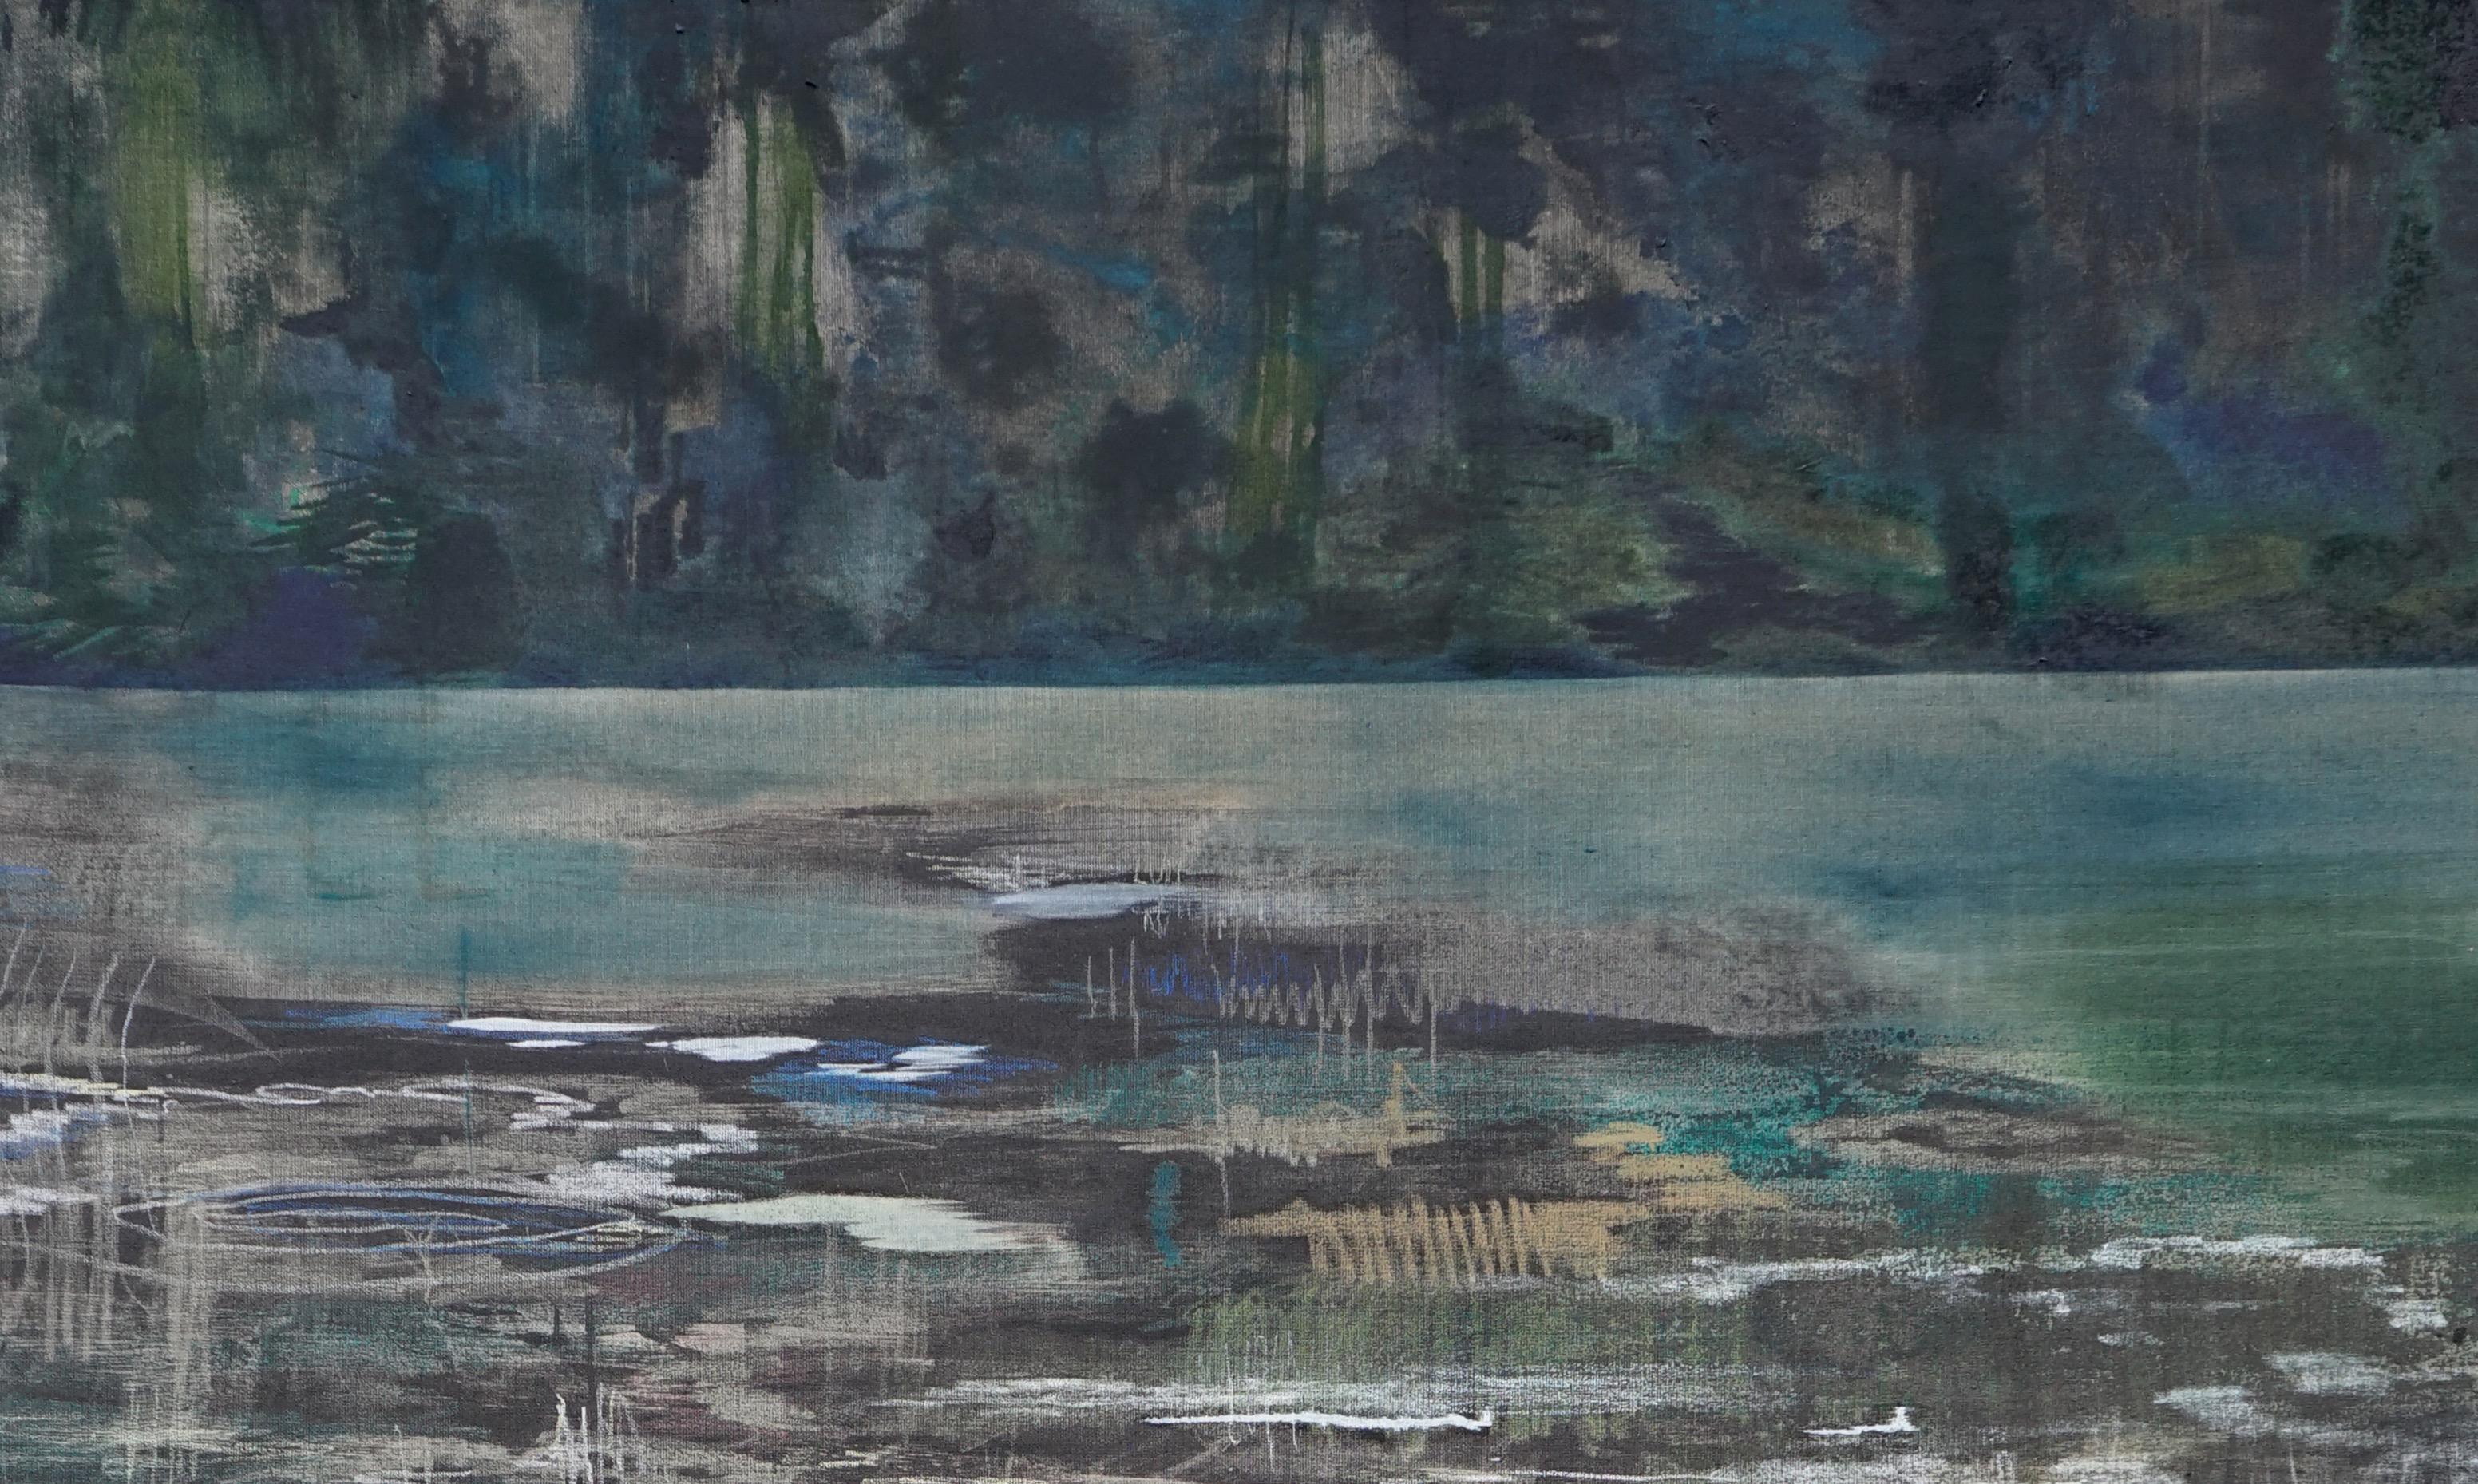 Banc sur la rivière - Peinture contemporaine de nature de grand format, paysage - Contemporain Painting par Aleksandra Batura